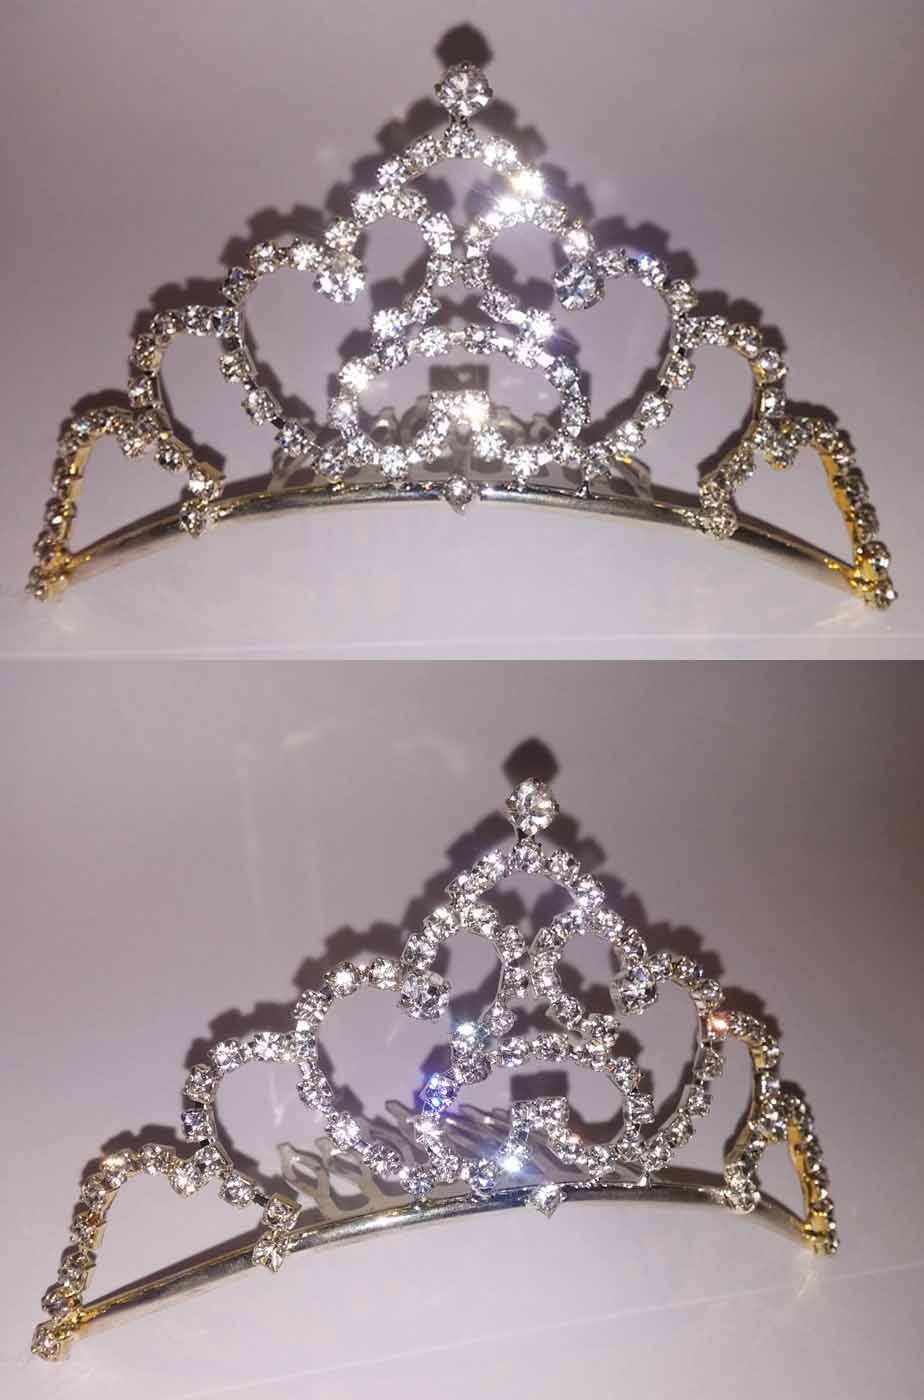 Coroncina principessa a tiara in metallo con pietre finte strass